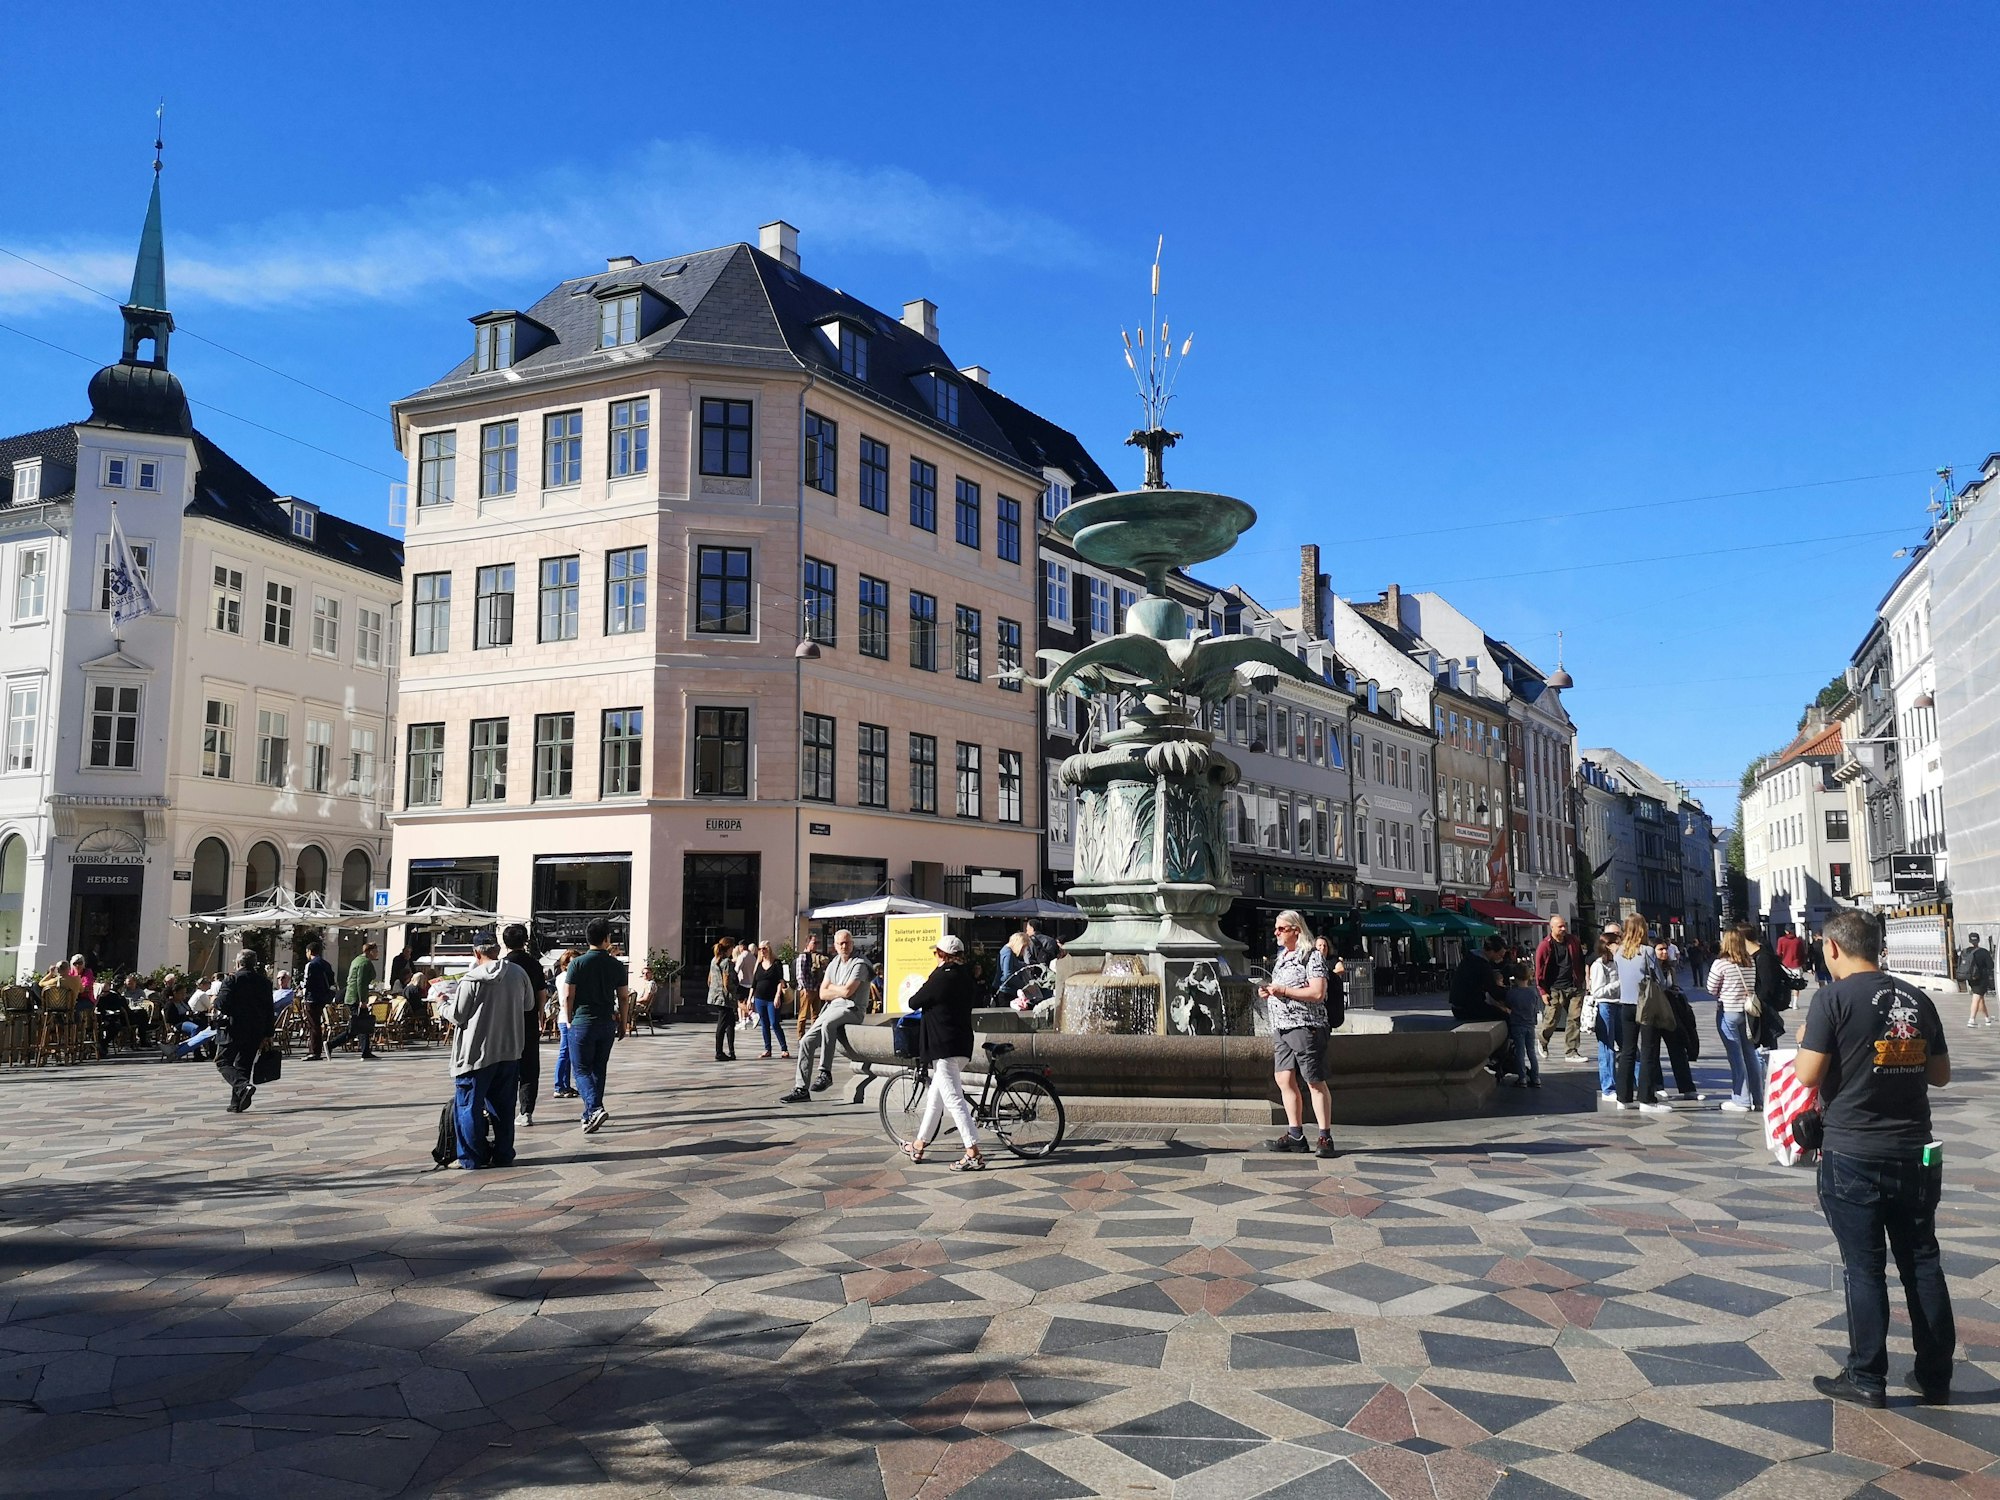 Der historische Marktplatz Stortorget im Zentrum der Stadt Kopenhagen (Dänemark), hier im Februar 2023.